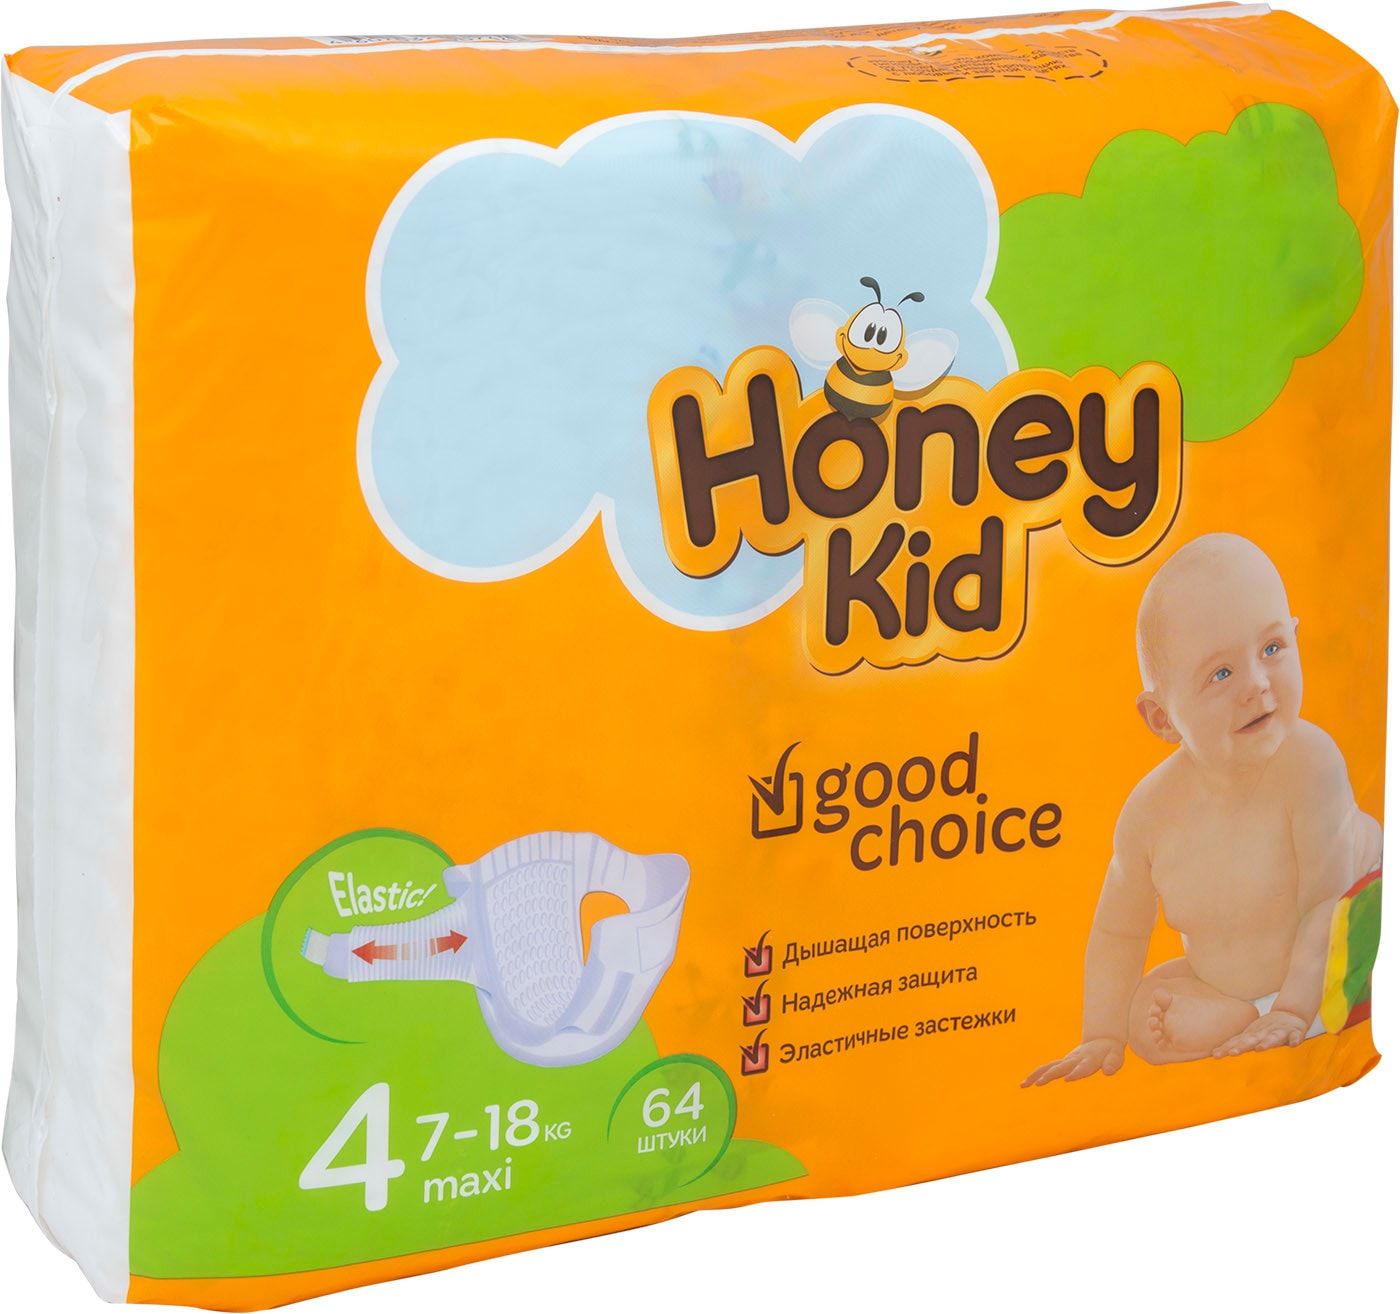 Хоне кид. Подгузники Хани КИД 4. Honey Kid подгузники 4 макси. Подгузники Honey Kid 4 Maxi (7-18кг) 64 шт..